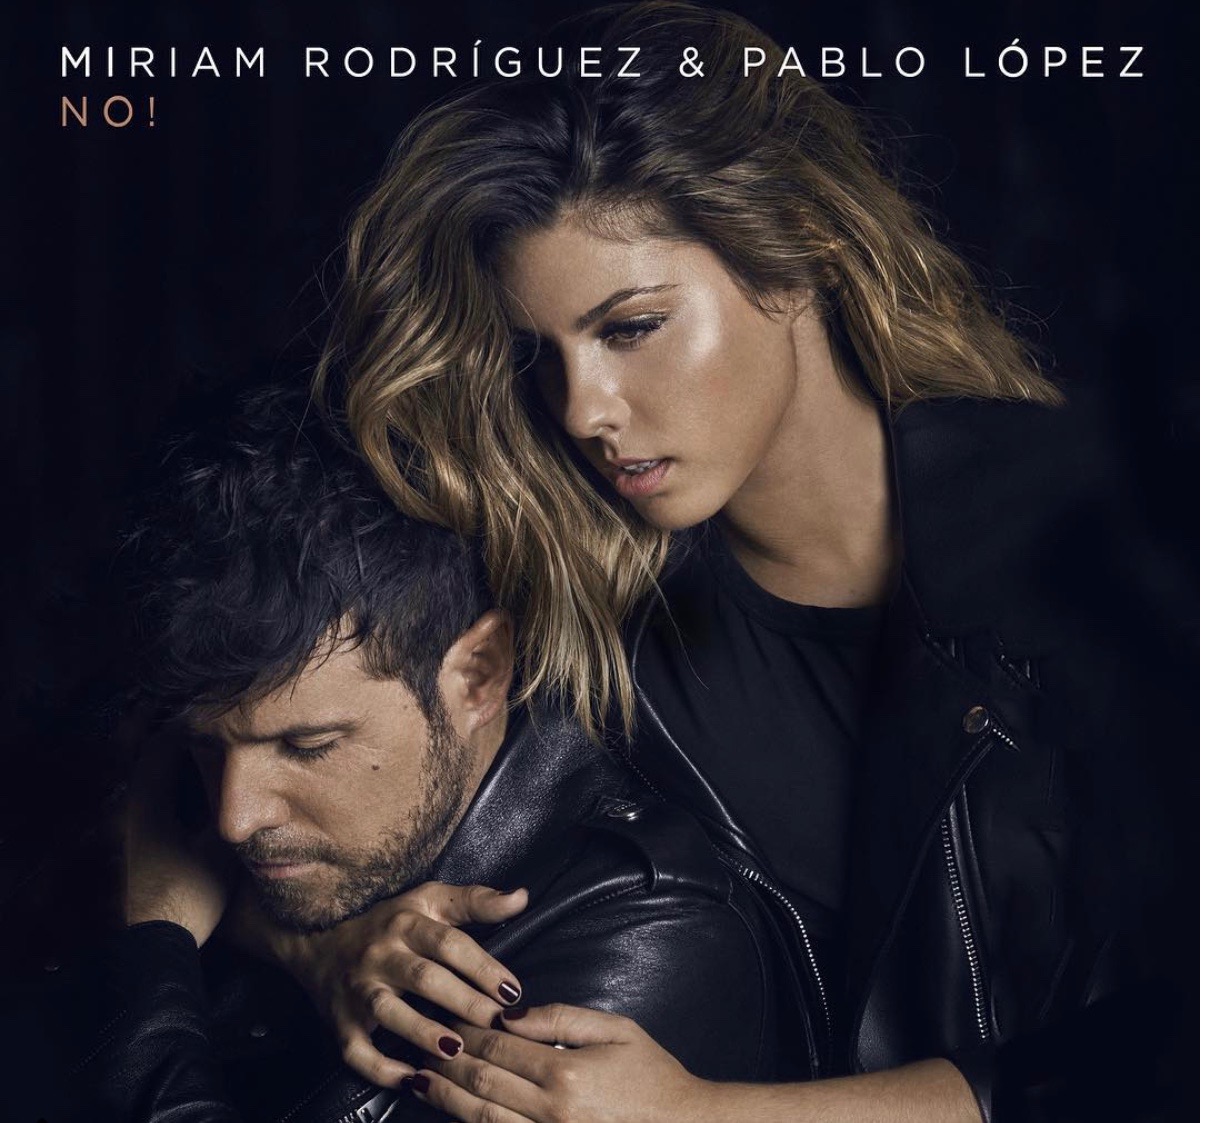 Miriam estrena single con Pablo López en OT